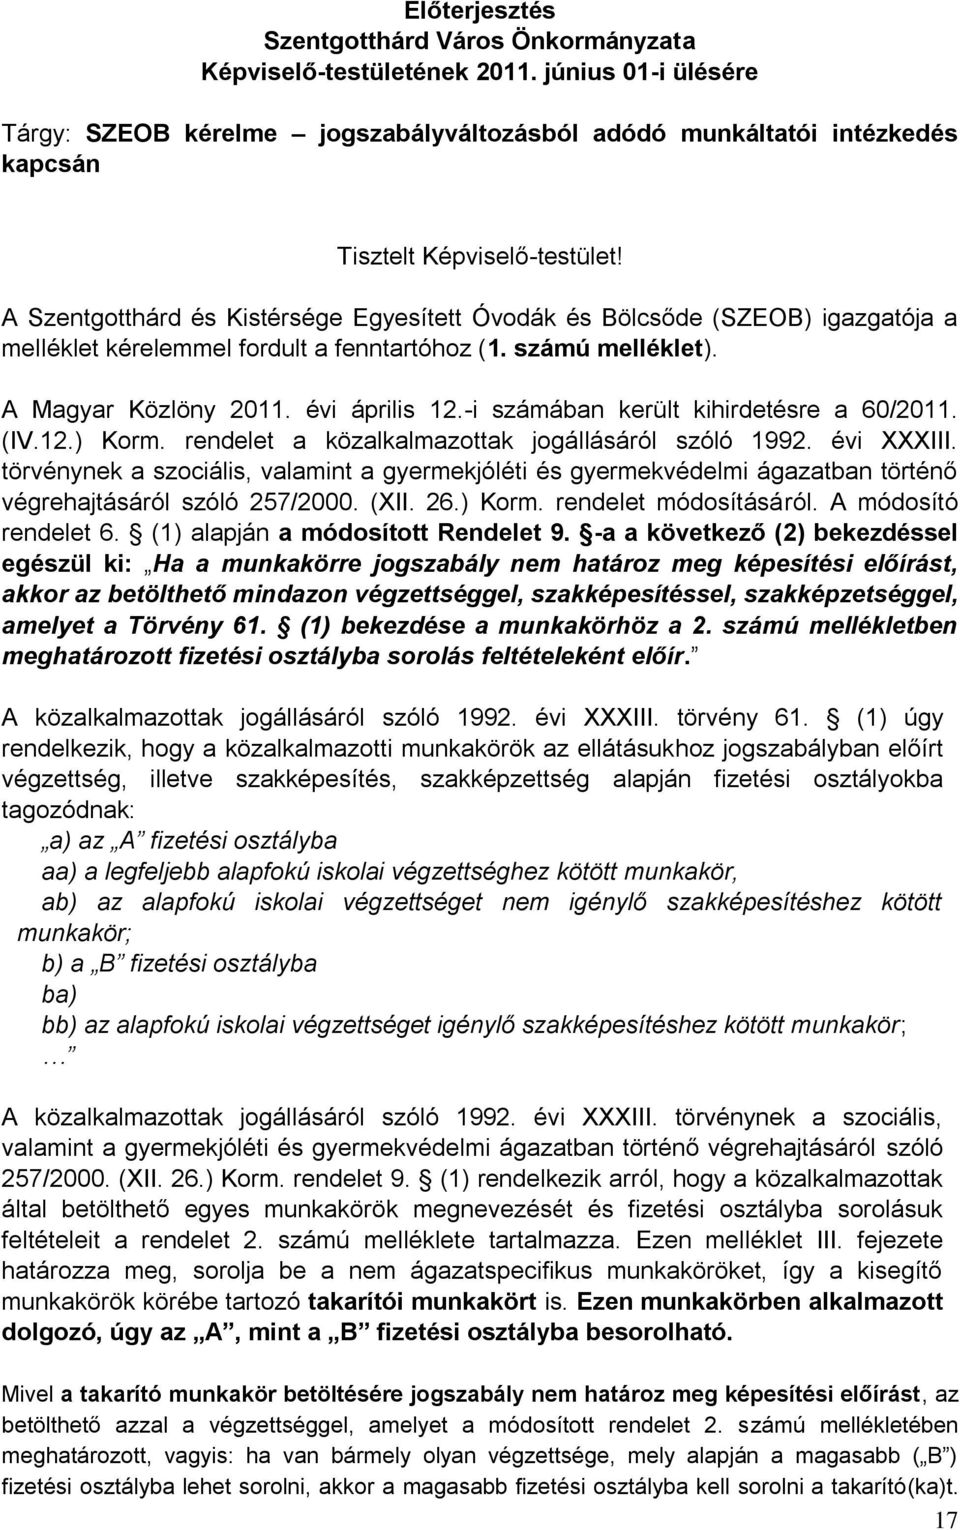 A Szentgotthárd és Kistérsége Egyesített Óvodák és Bölcsőde (SZEOB) igazgatója a melléklet kérelemmel fordult a fenntartóhoz (1. számú melléklet). A Magyar Közlöny 2011. évi április 12.